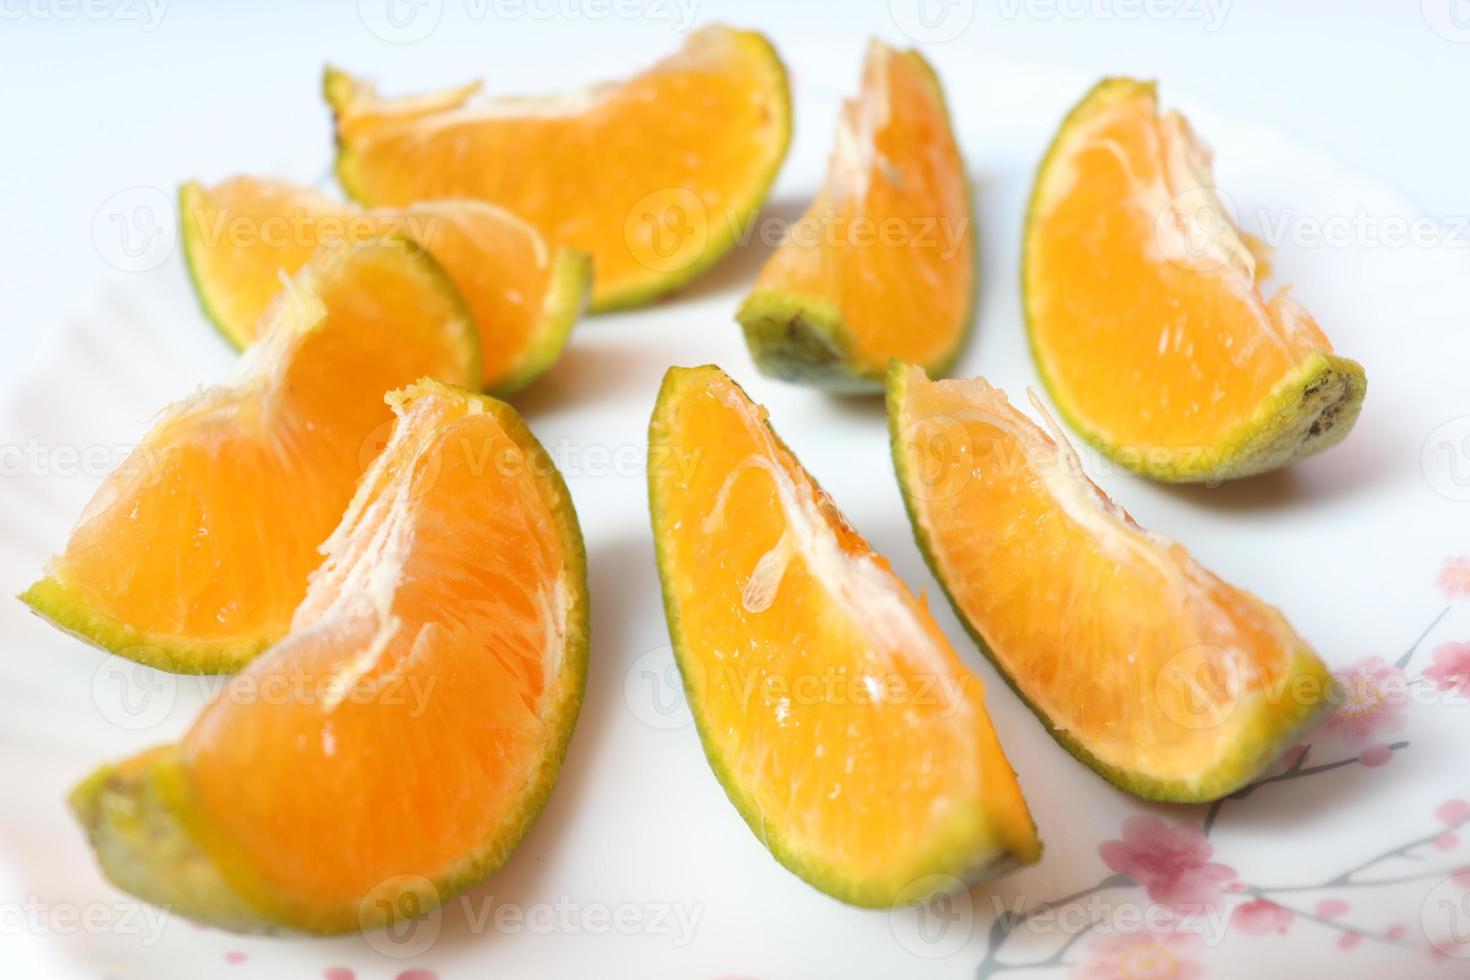 caldo de tangerinas saboroso e saudável foto